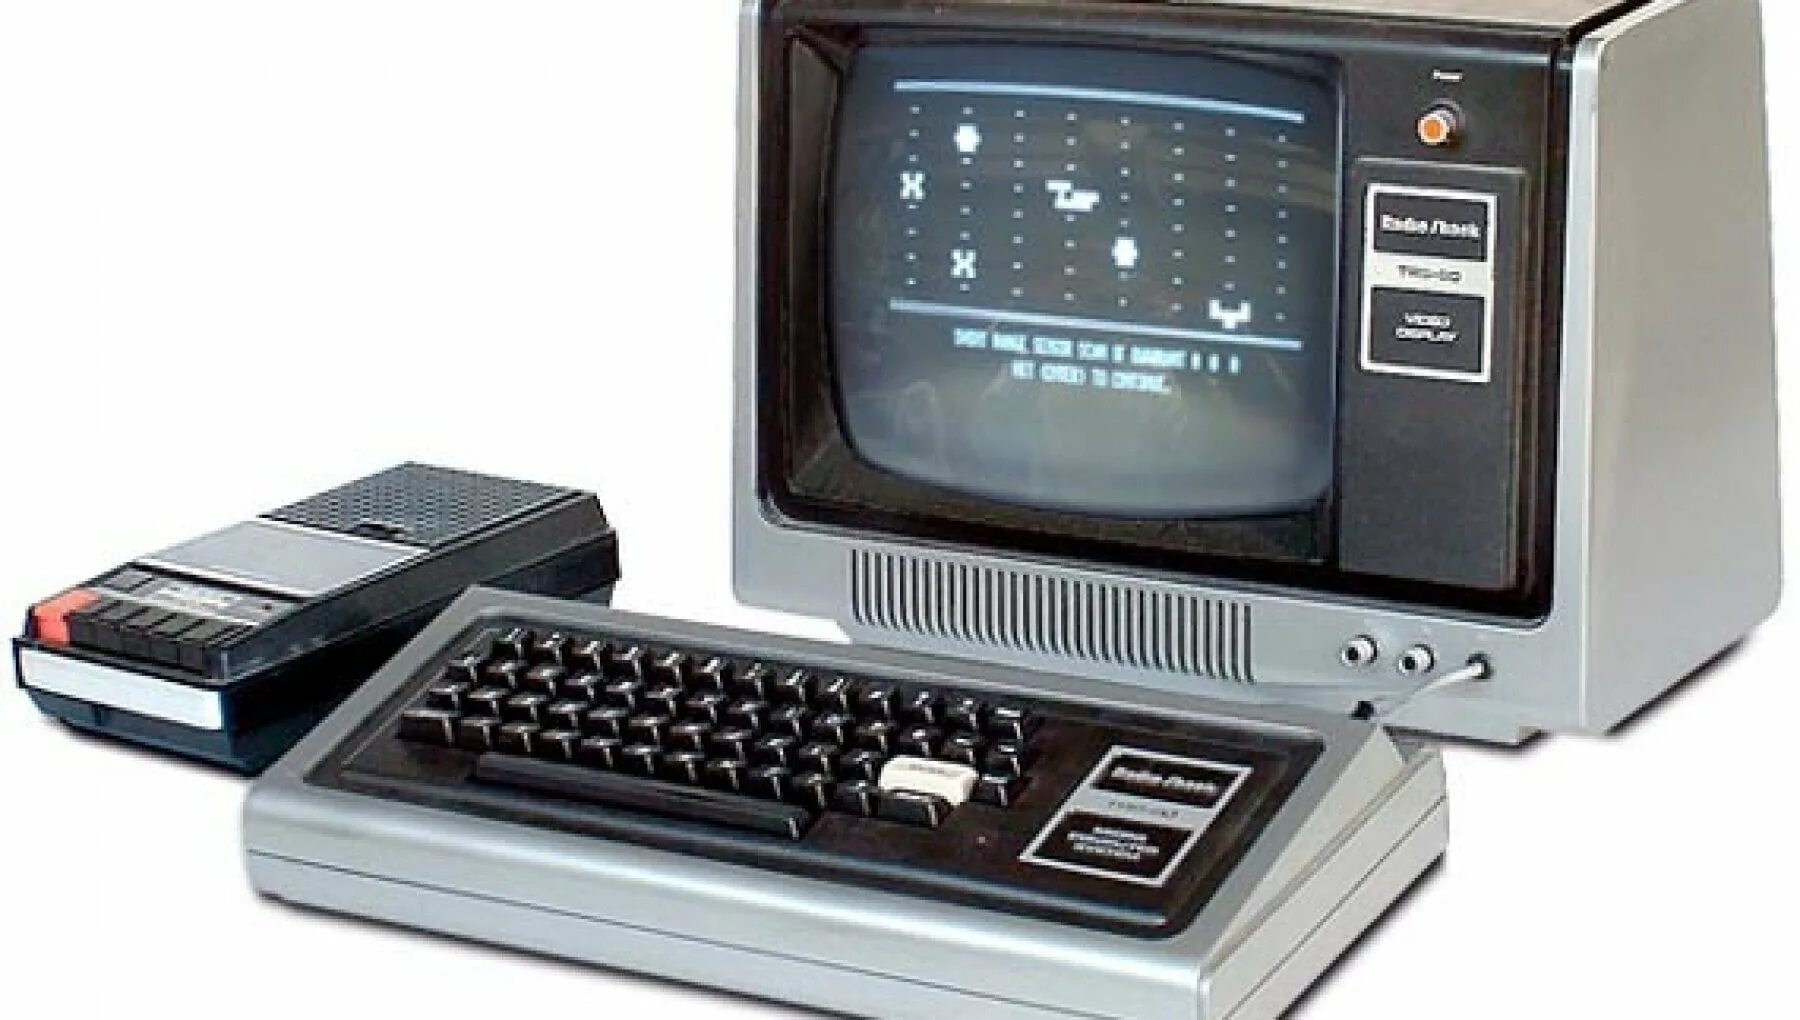 TRS-80 model i. TRS-80 Computer. Radio Shack TRS-80. Персональный компьютер Tandy Radio Shack TRS-80. Персональные электронные вычислительные машины